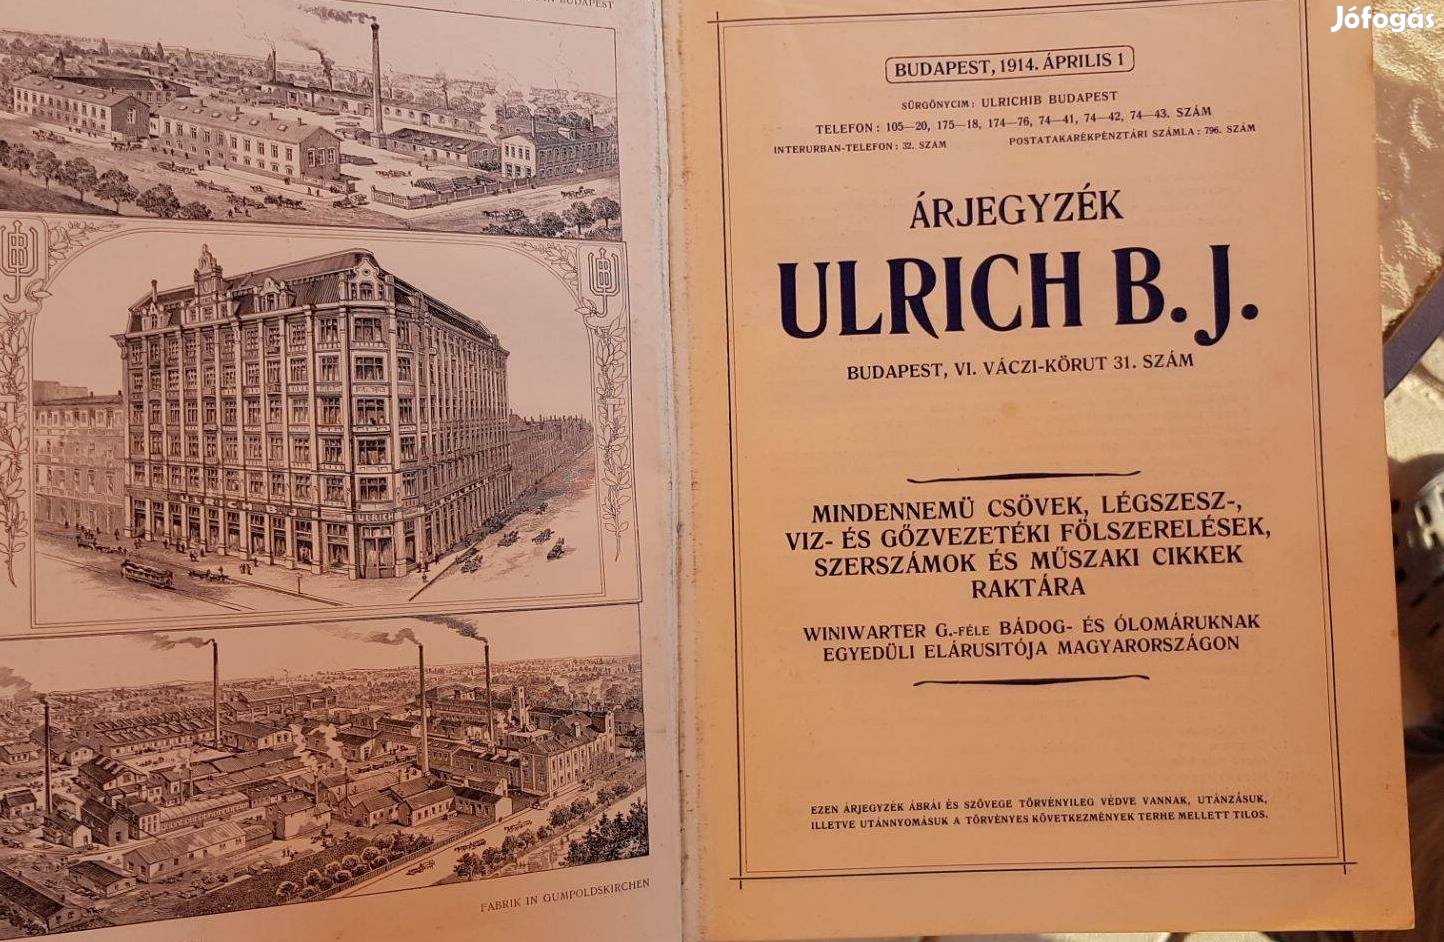 Ulrich B. J. árjegyzék[e] (1914)